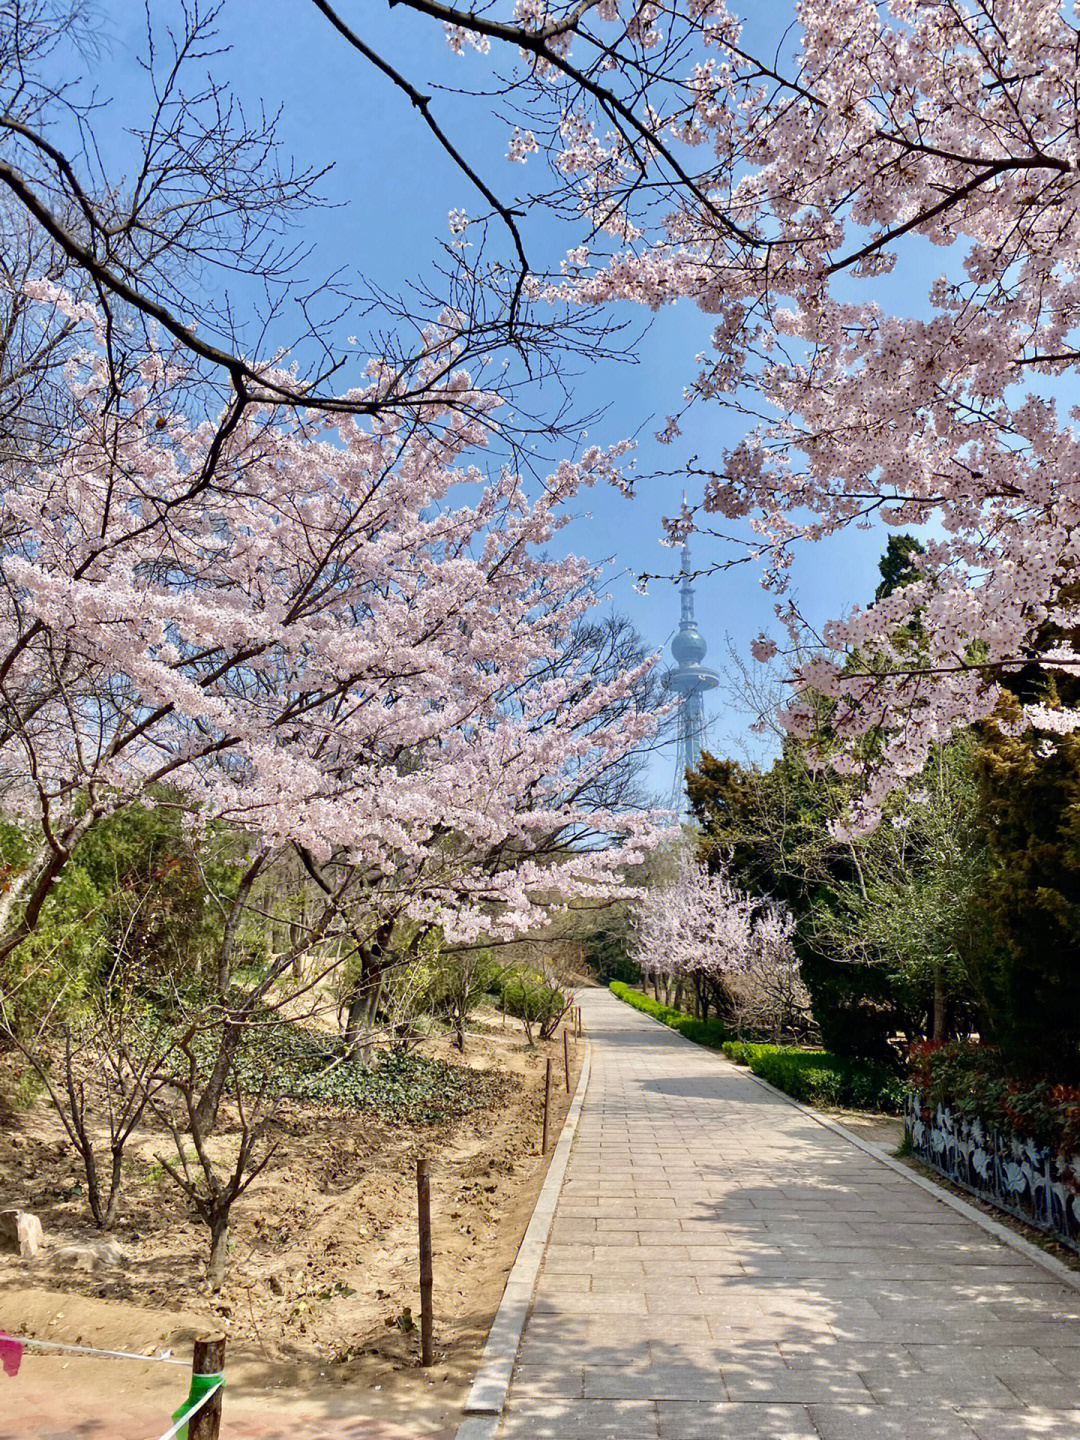 中山公园的樱花开了